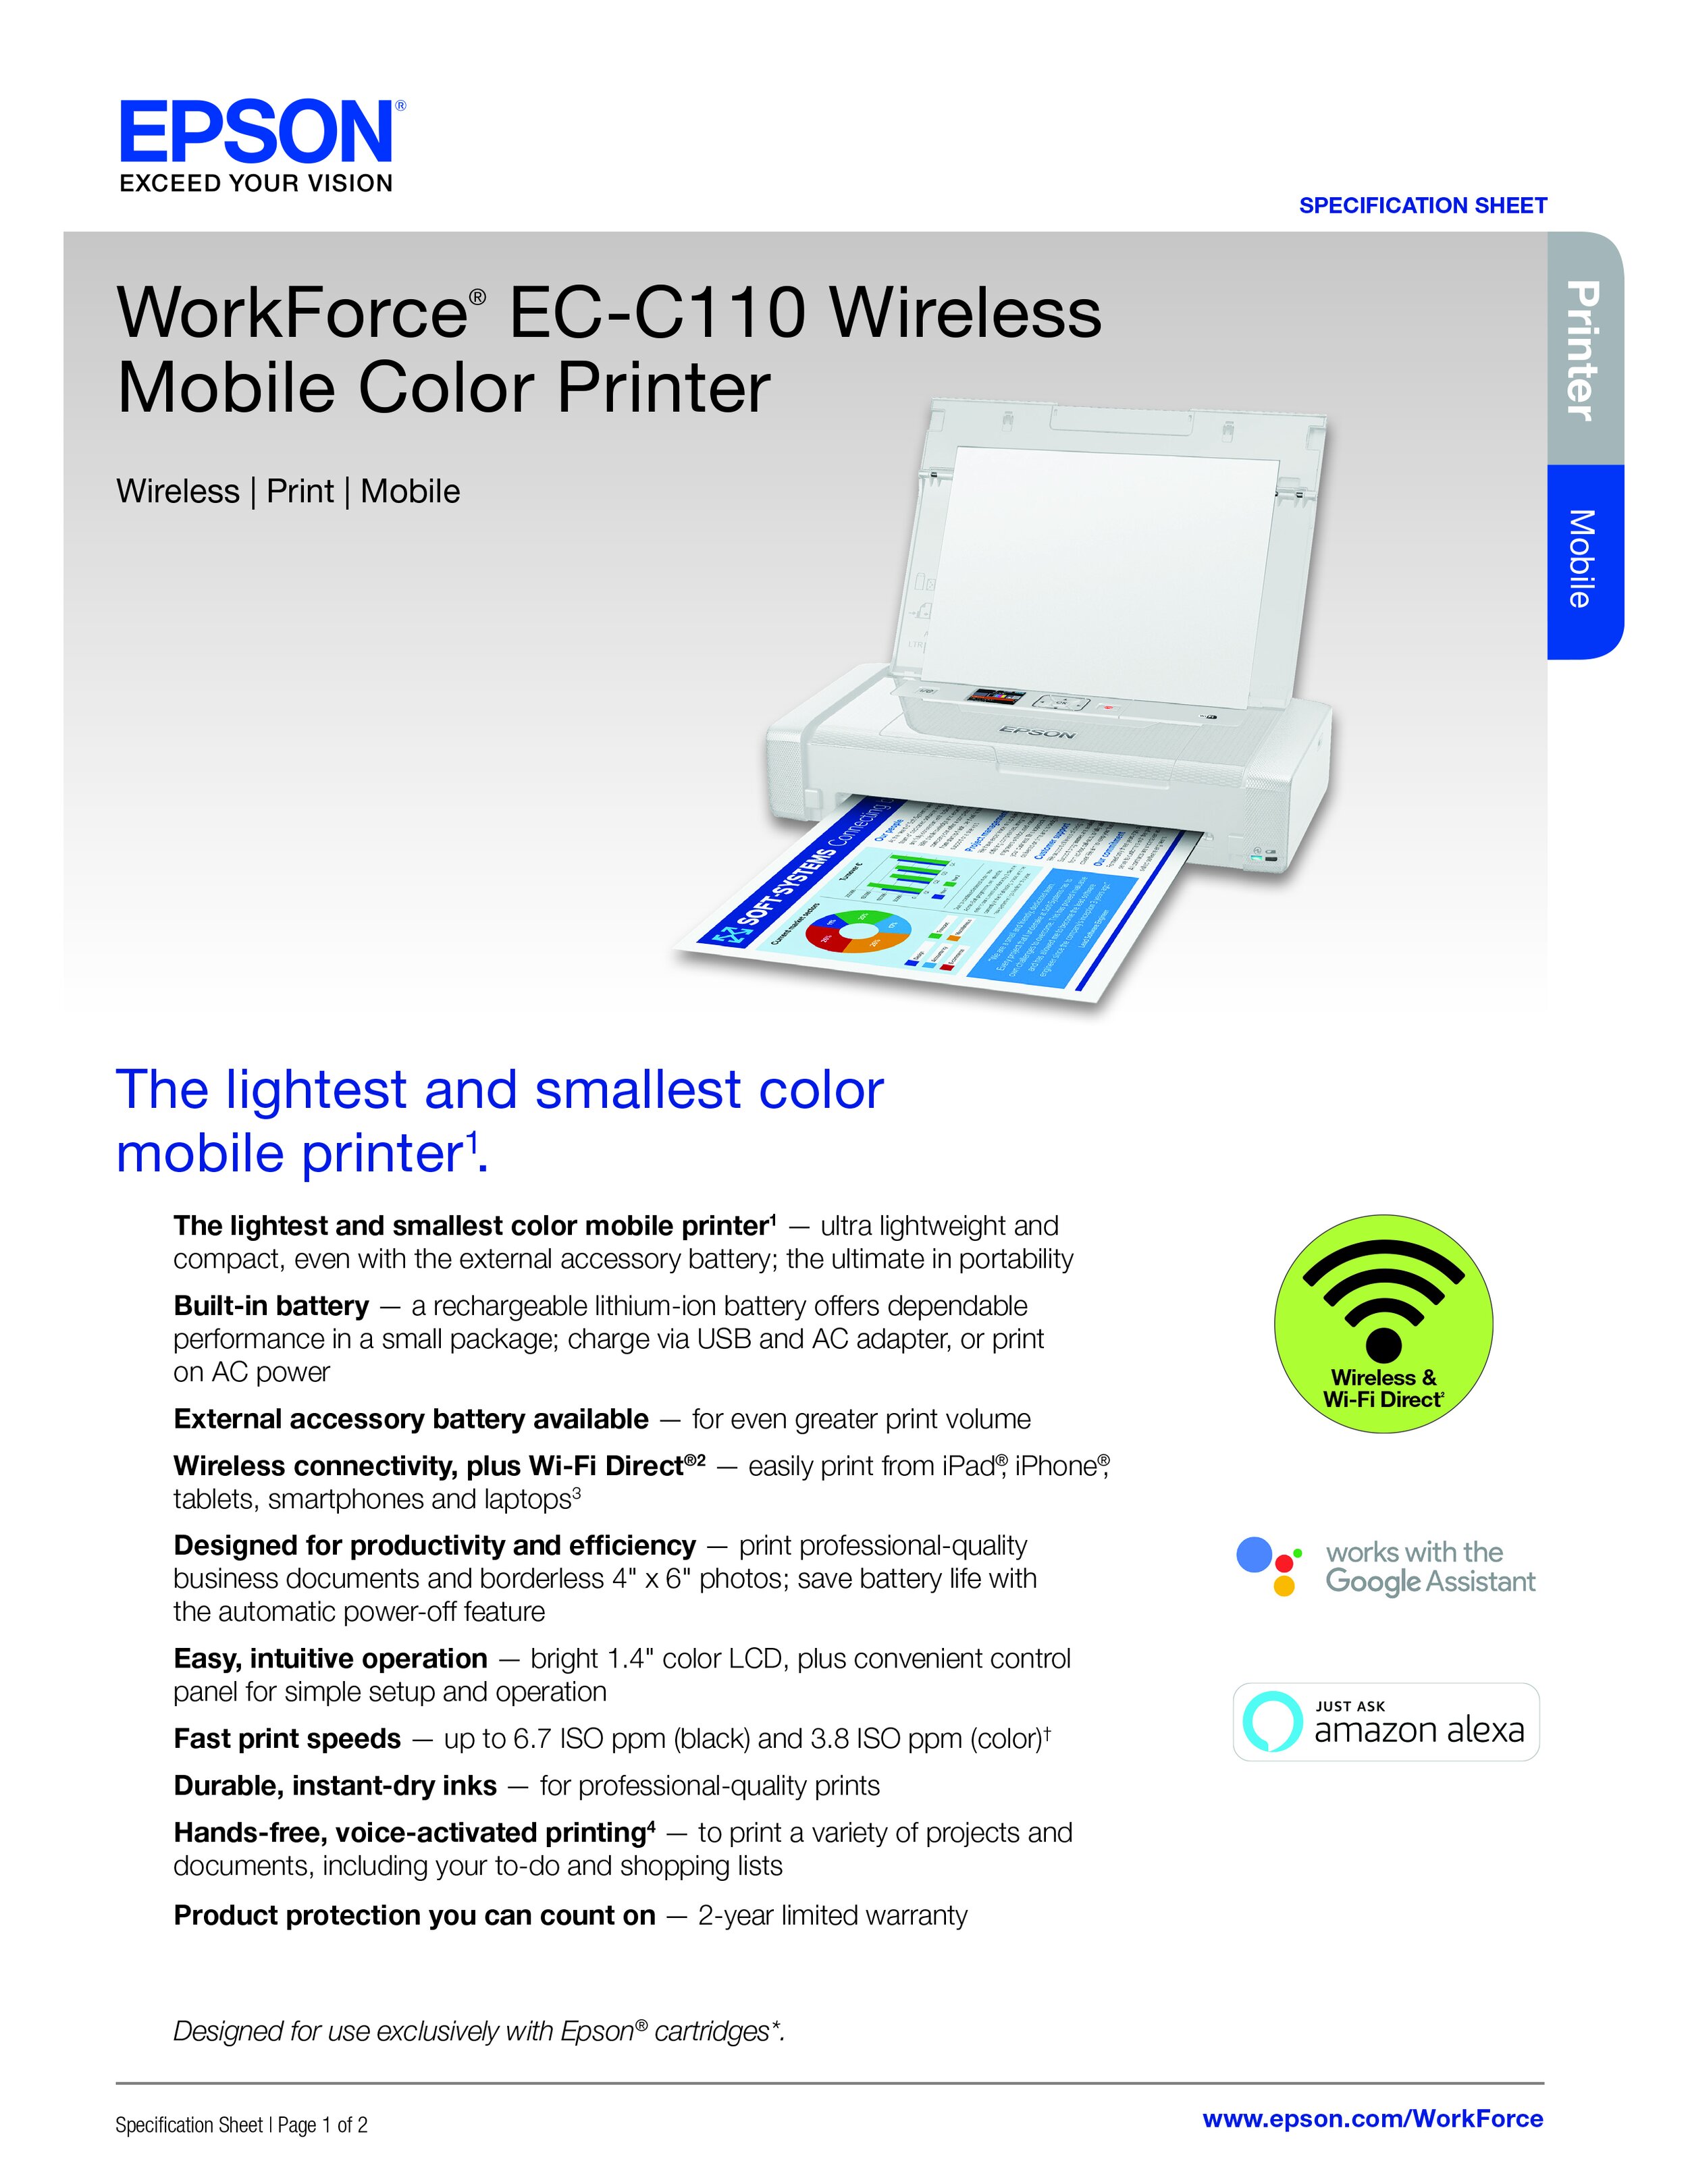 WorkForce_EC-C110_Printer_Specification_Sheet_CPD-58379R2-1.jpg